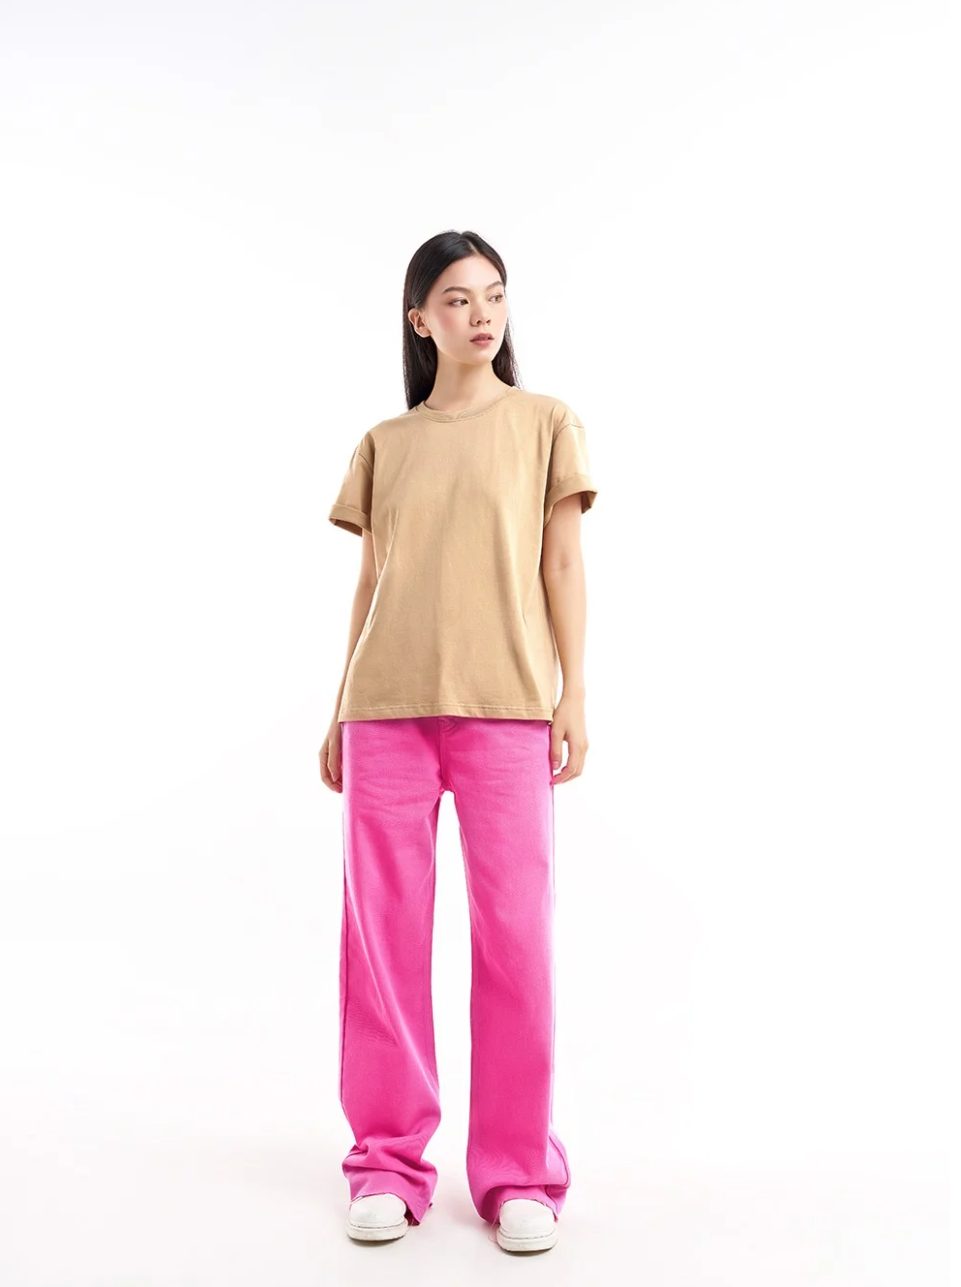 Dottie Round Neck Top T0523 - Gu Fashion | Vietnam Fashion Store